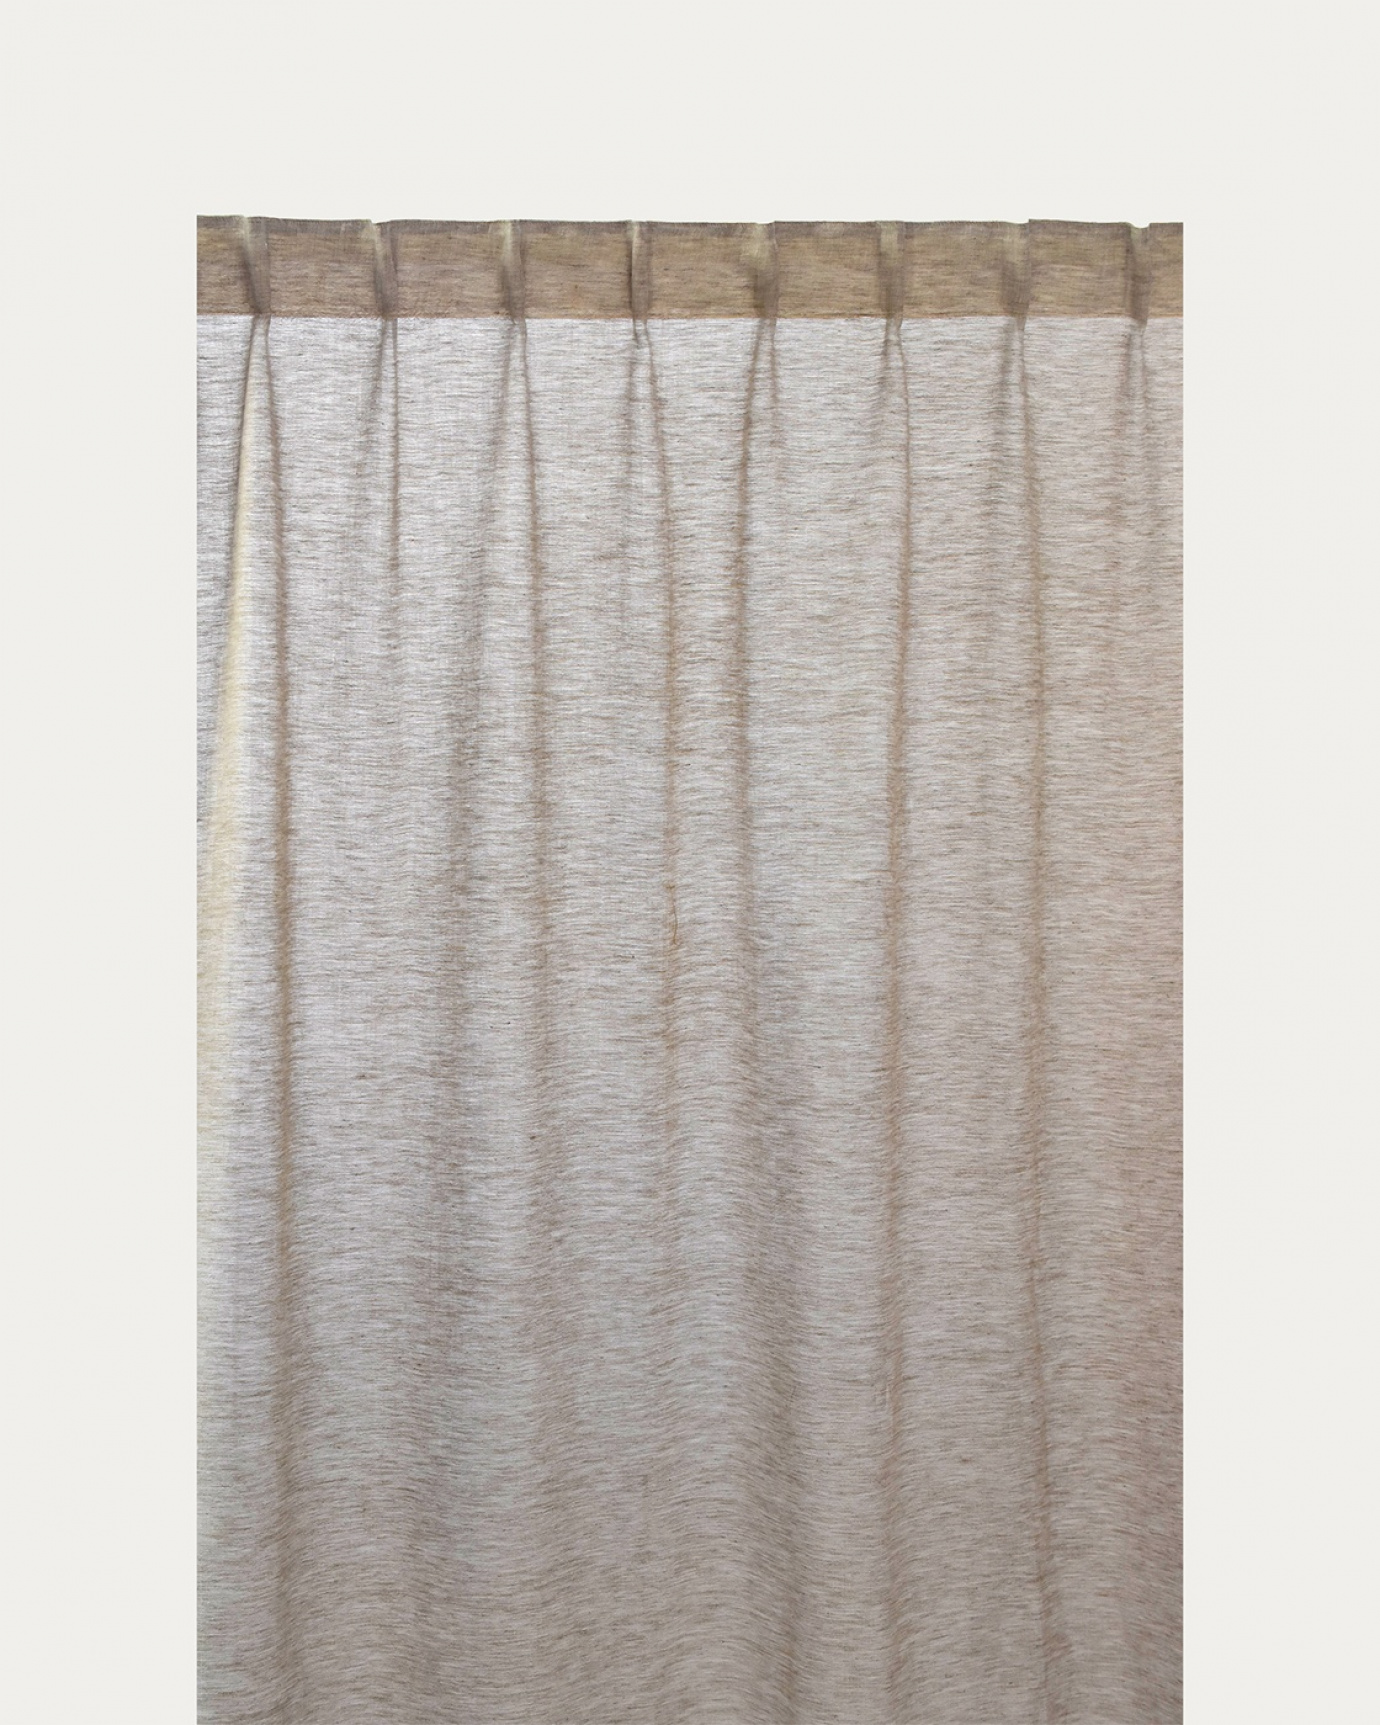 Produktbild mullvadsbrun INTERMEZZO gardin av skirt linne med färdiga veckband från LINUM DESIGN. Storlek 140x290 cm och säljs i 2-pack.